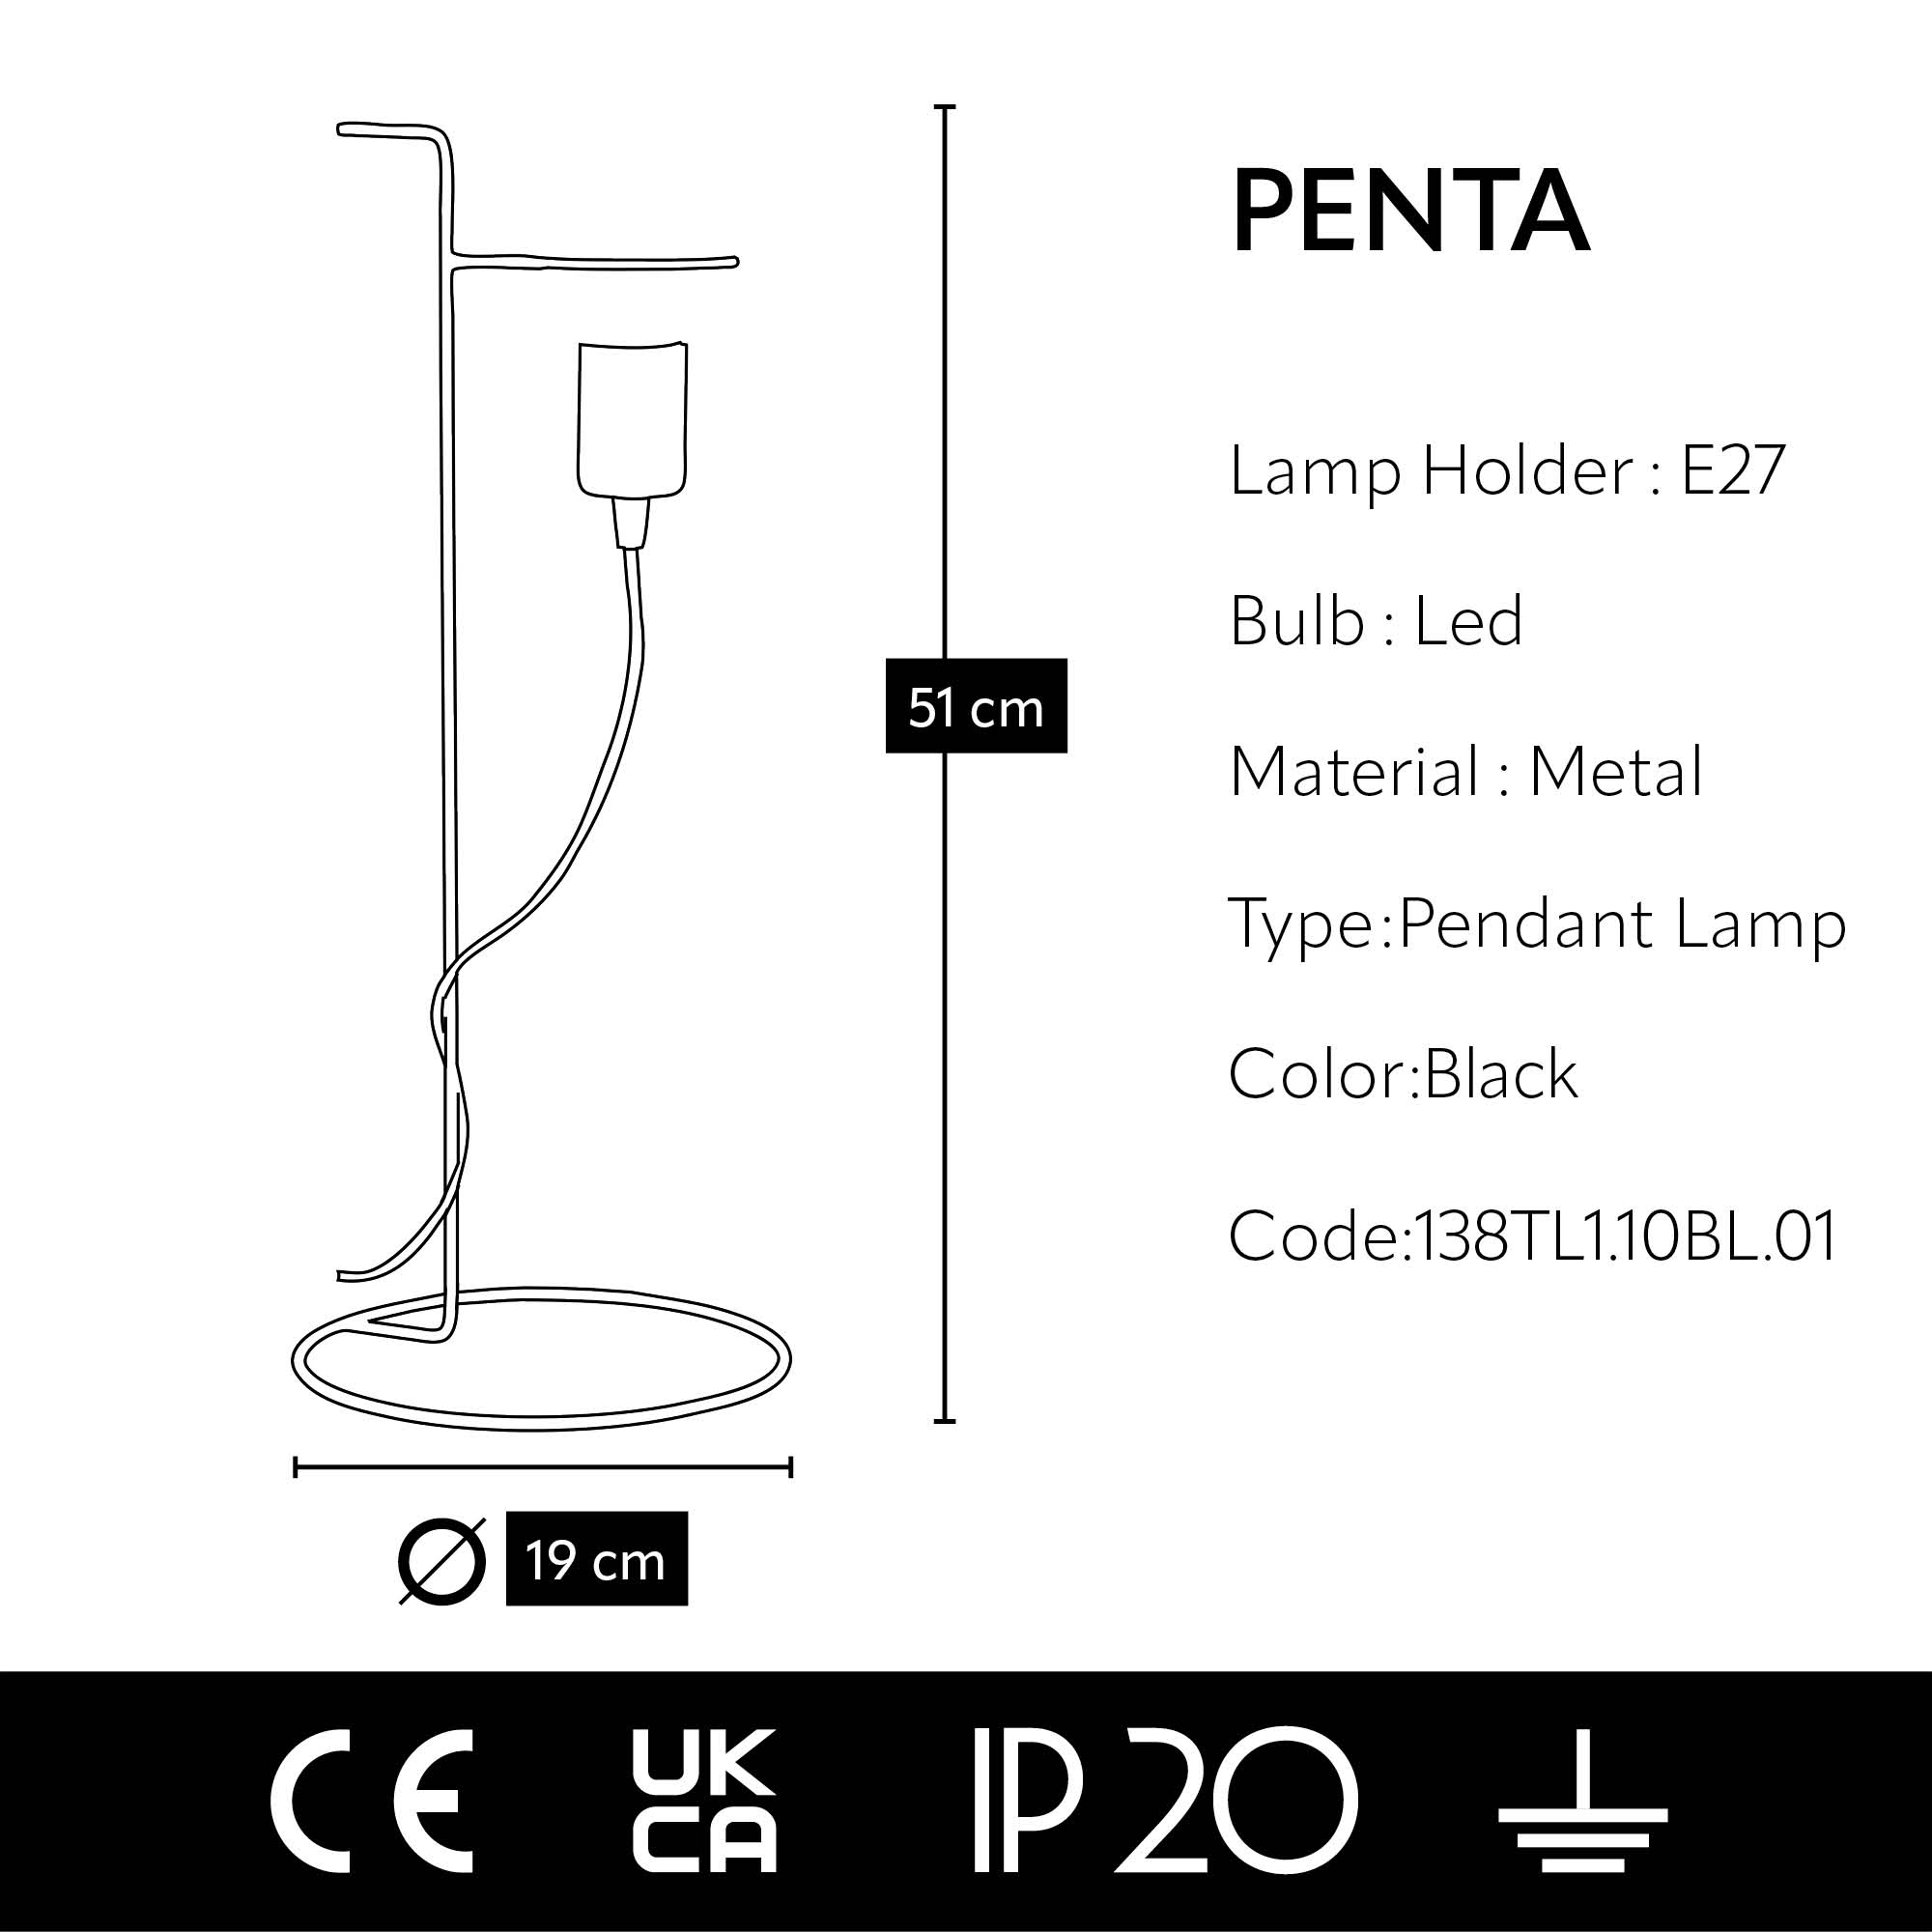 PENTA Table Lamp